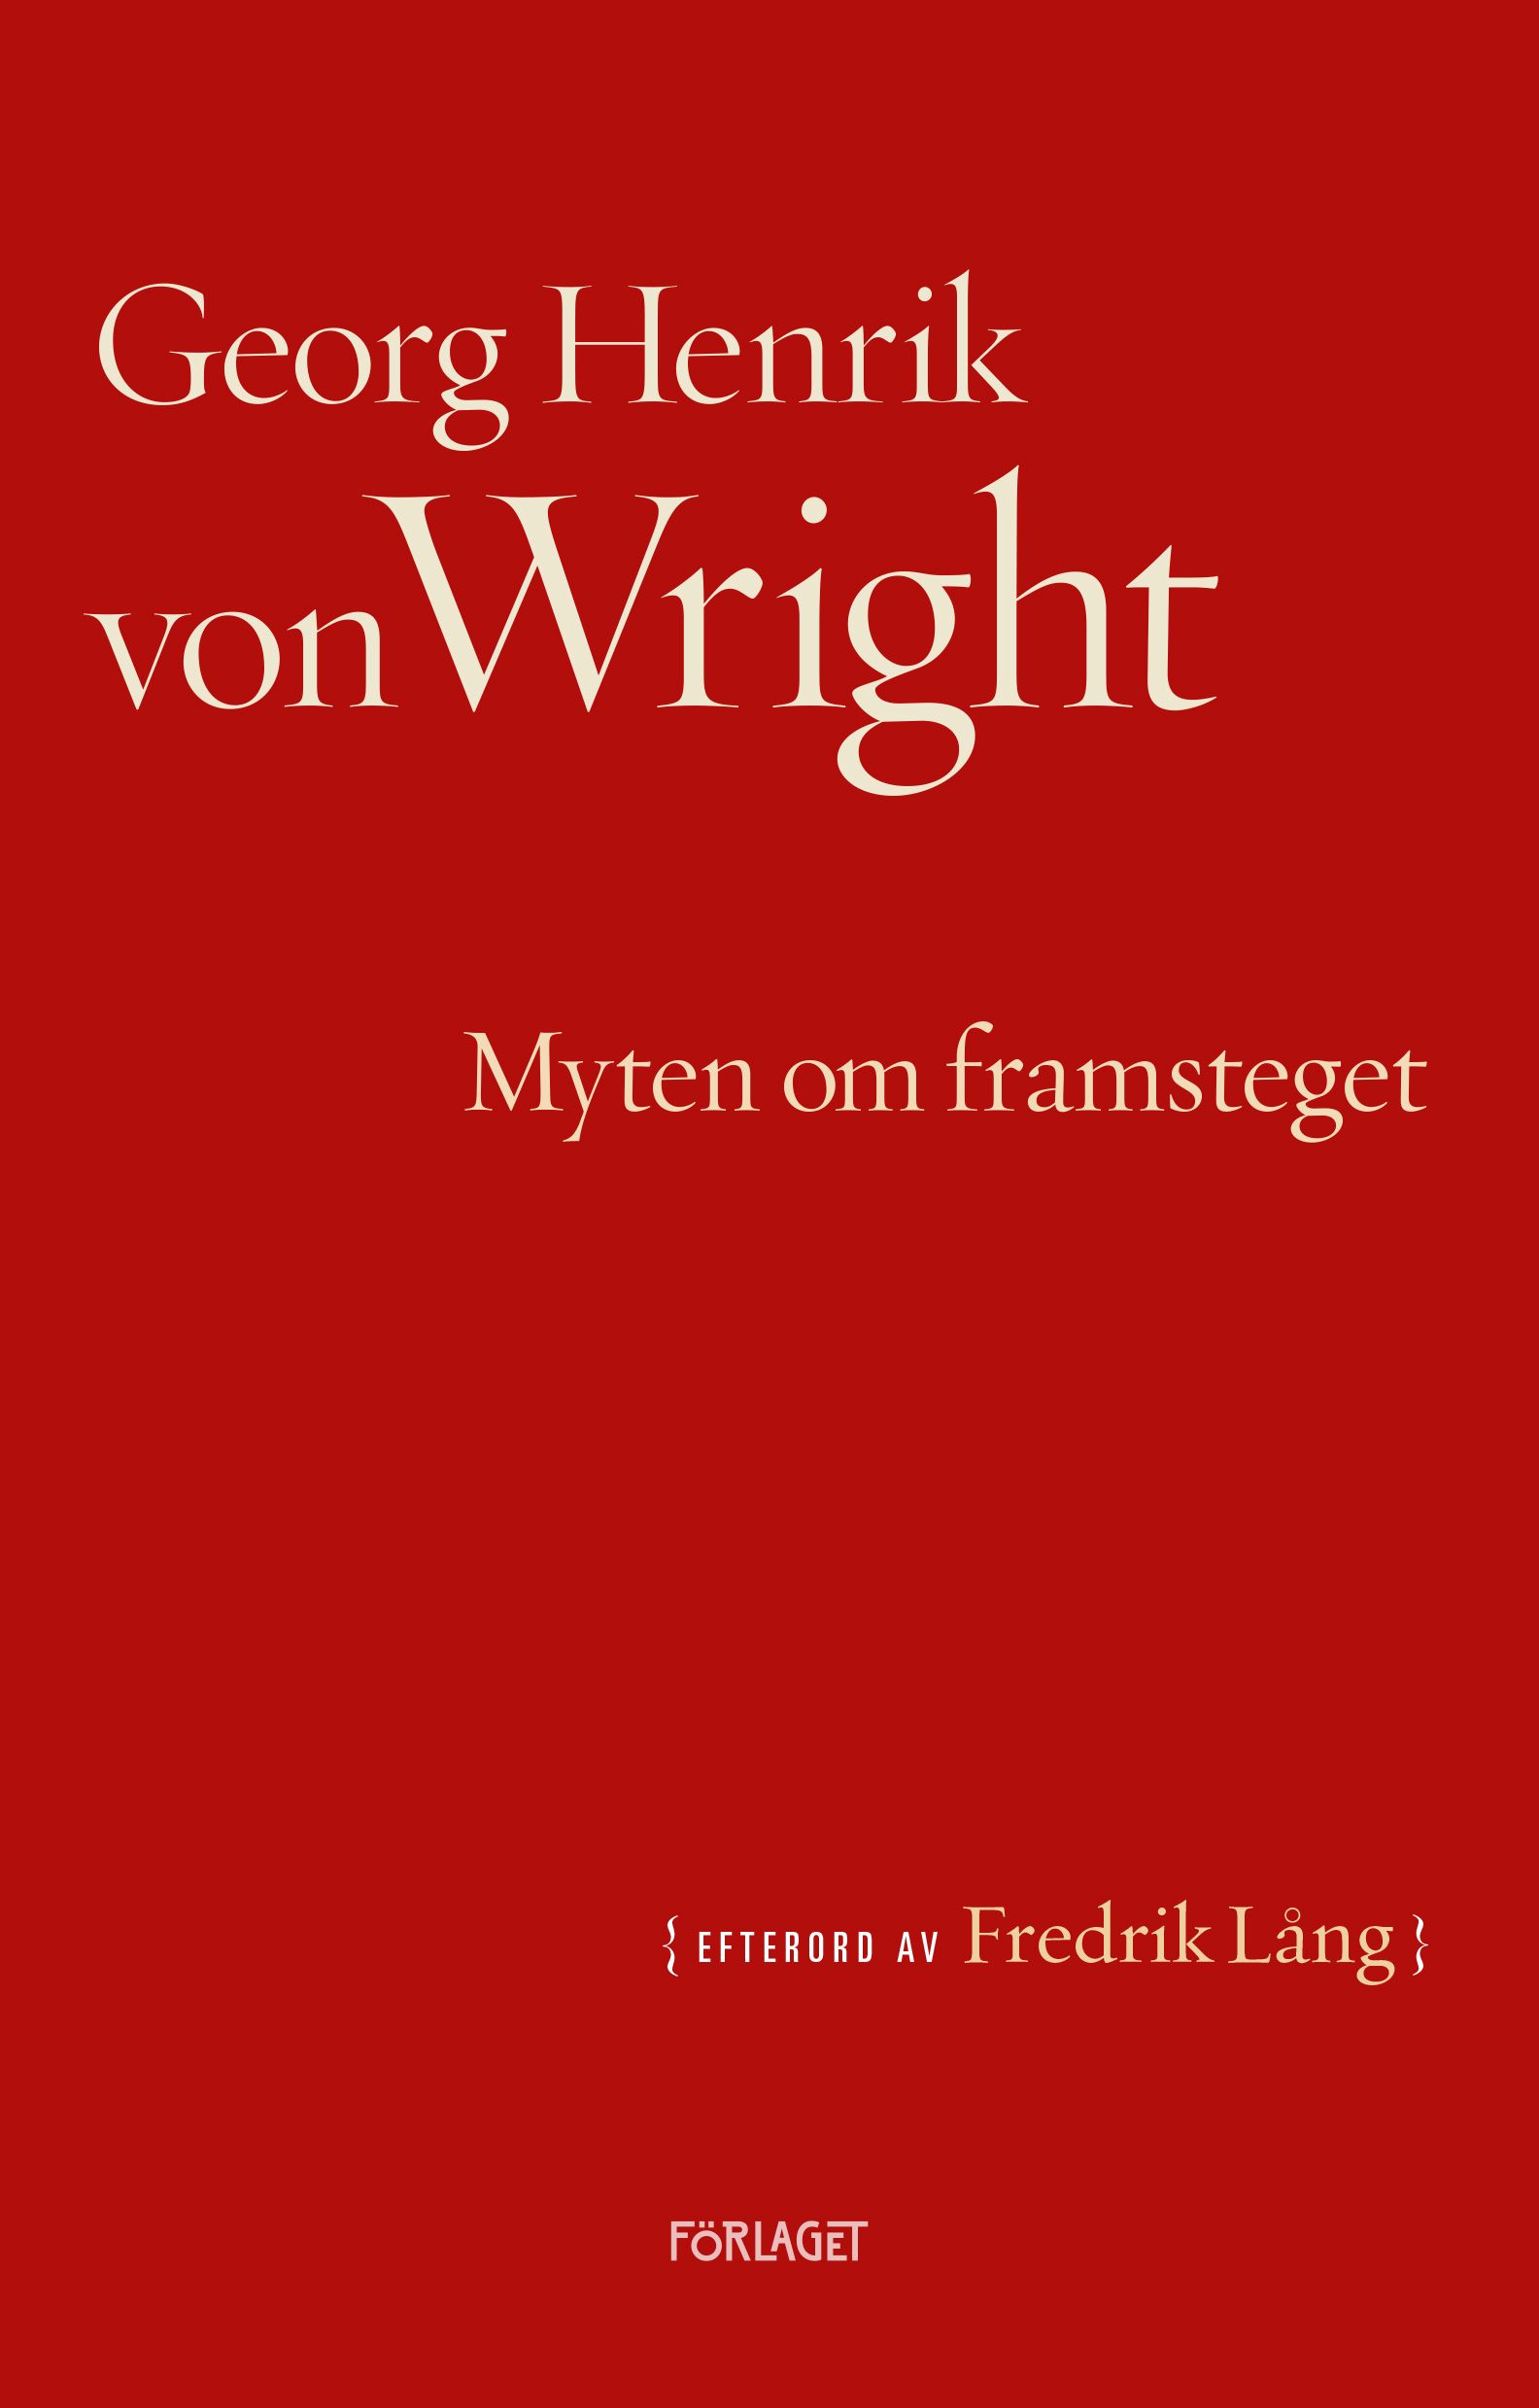 Georg Henrik von Wright : Myten om framsteget